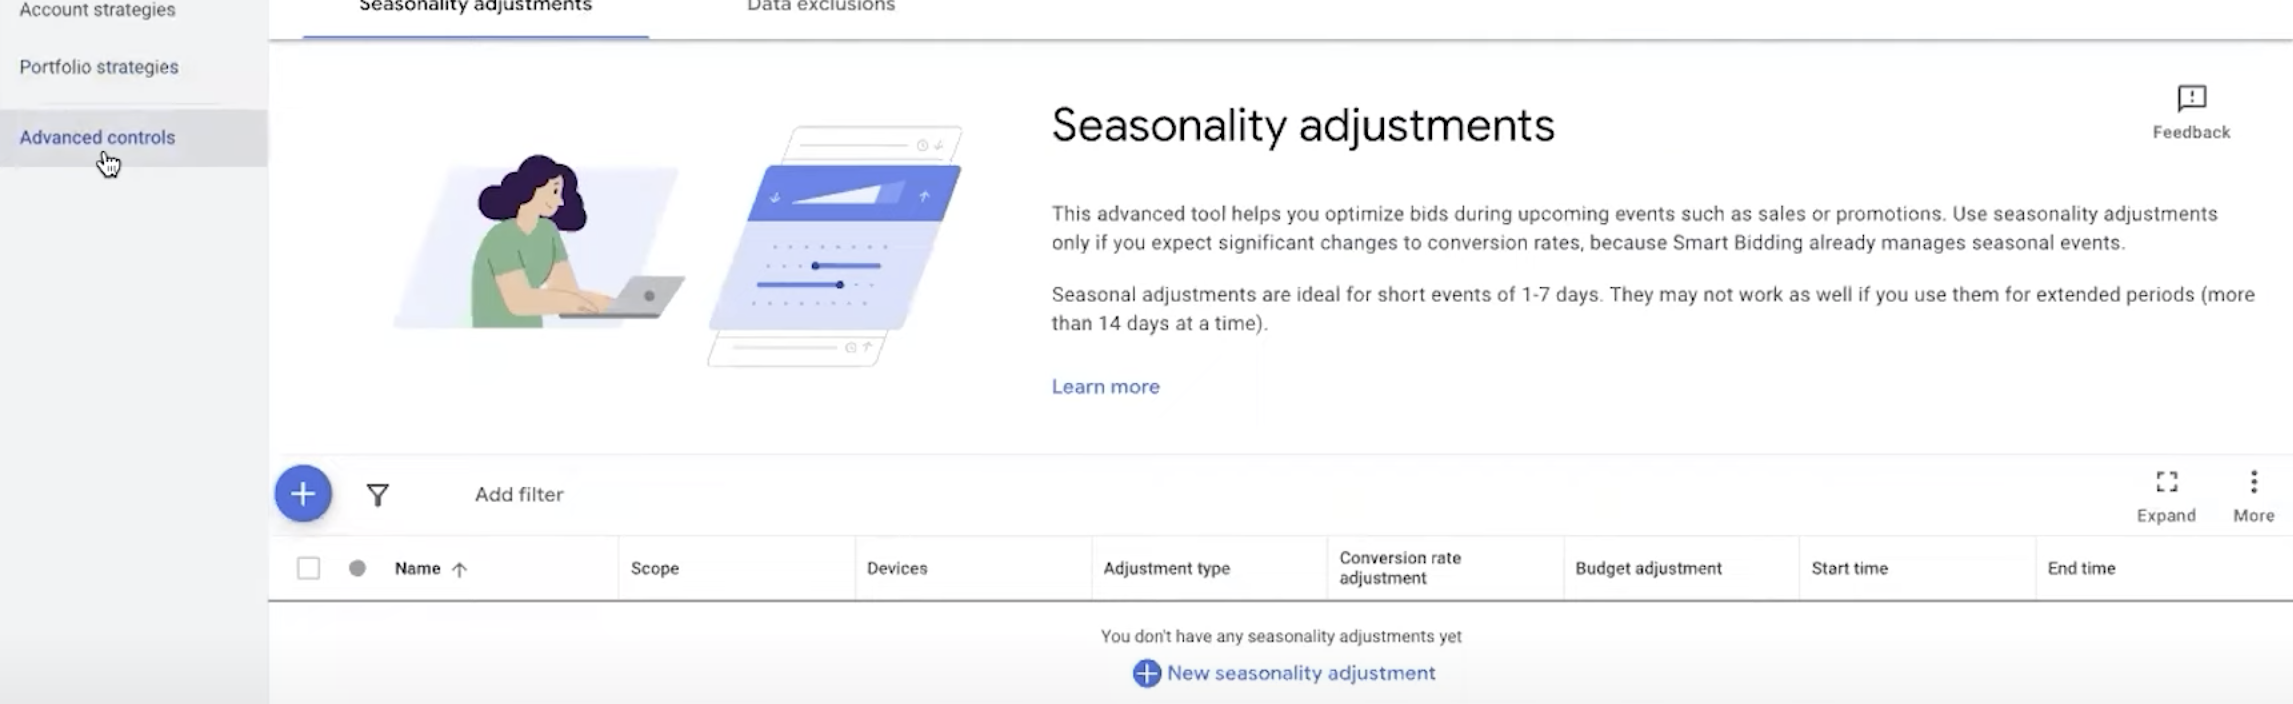 screenshot of seasonality adjustments